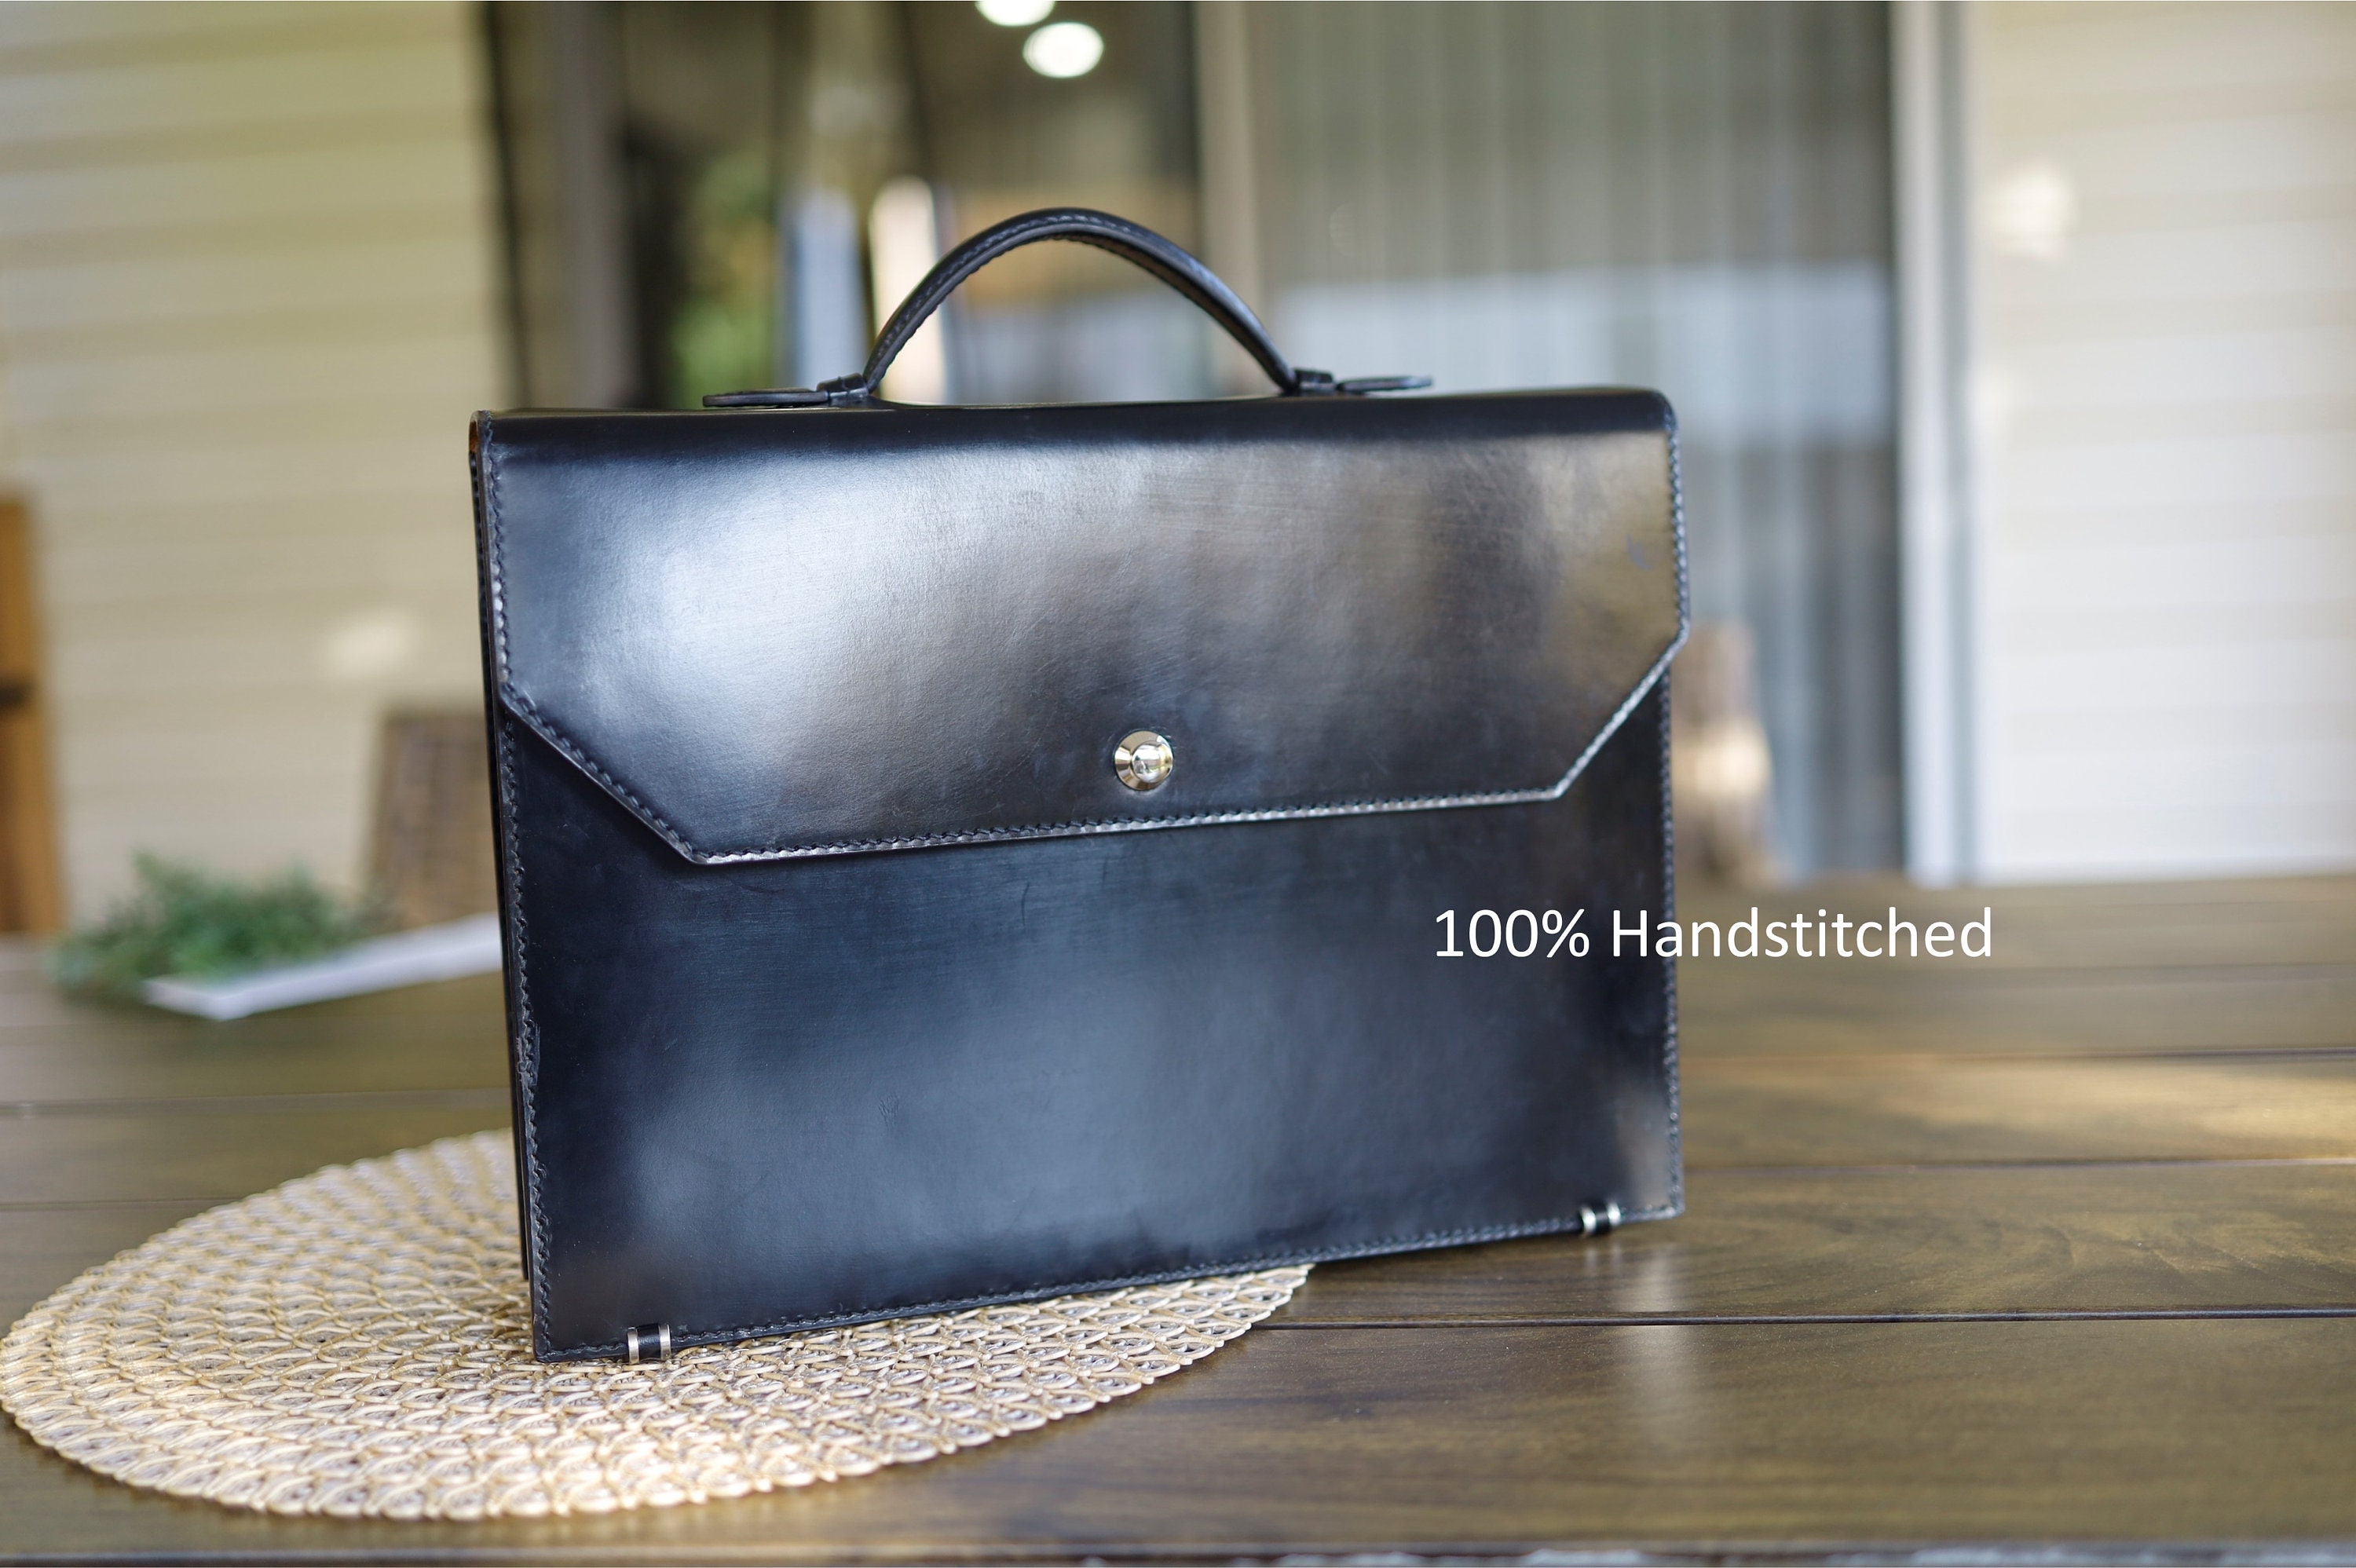 The HUE Cambie Bag Premium Epsom Leather Handmade Bag 